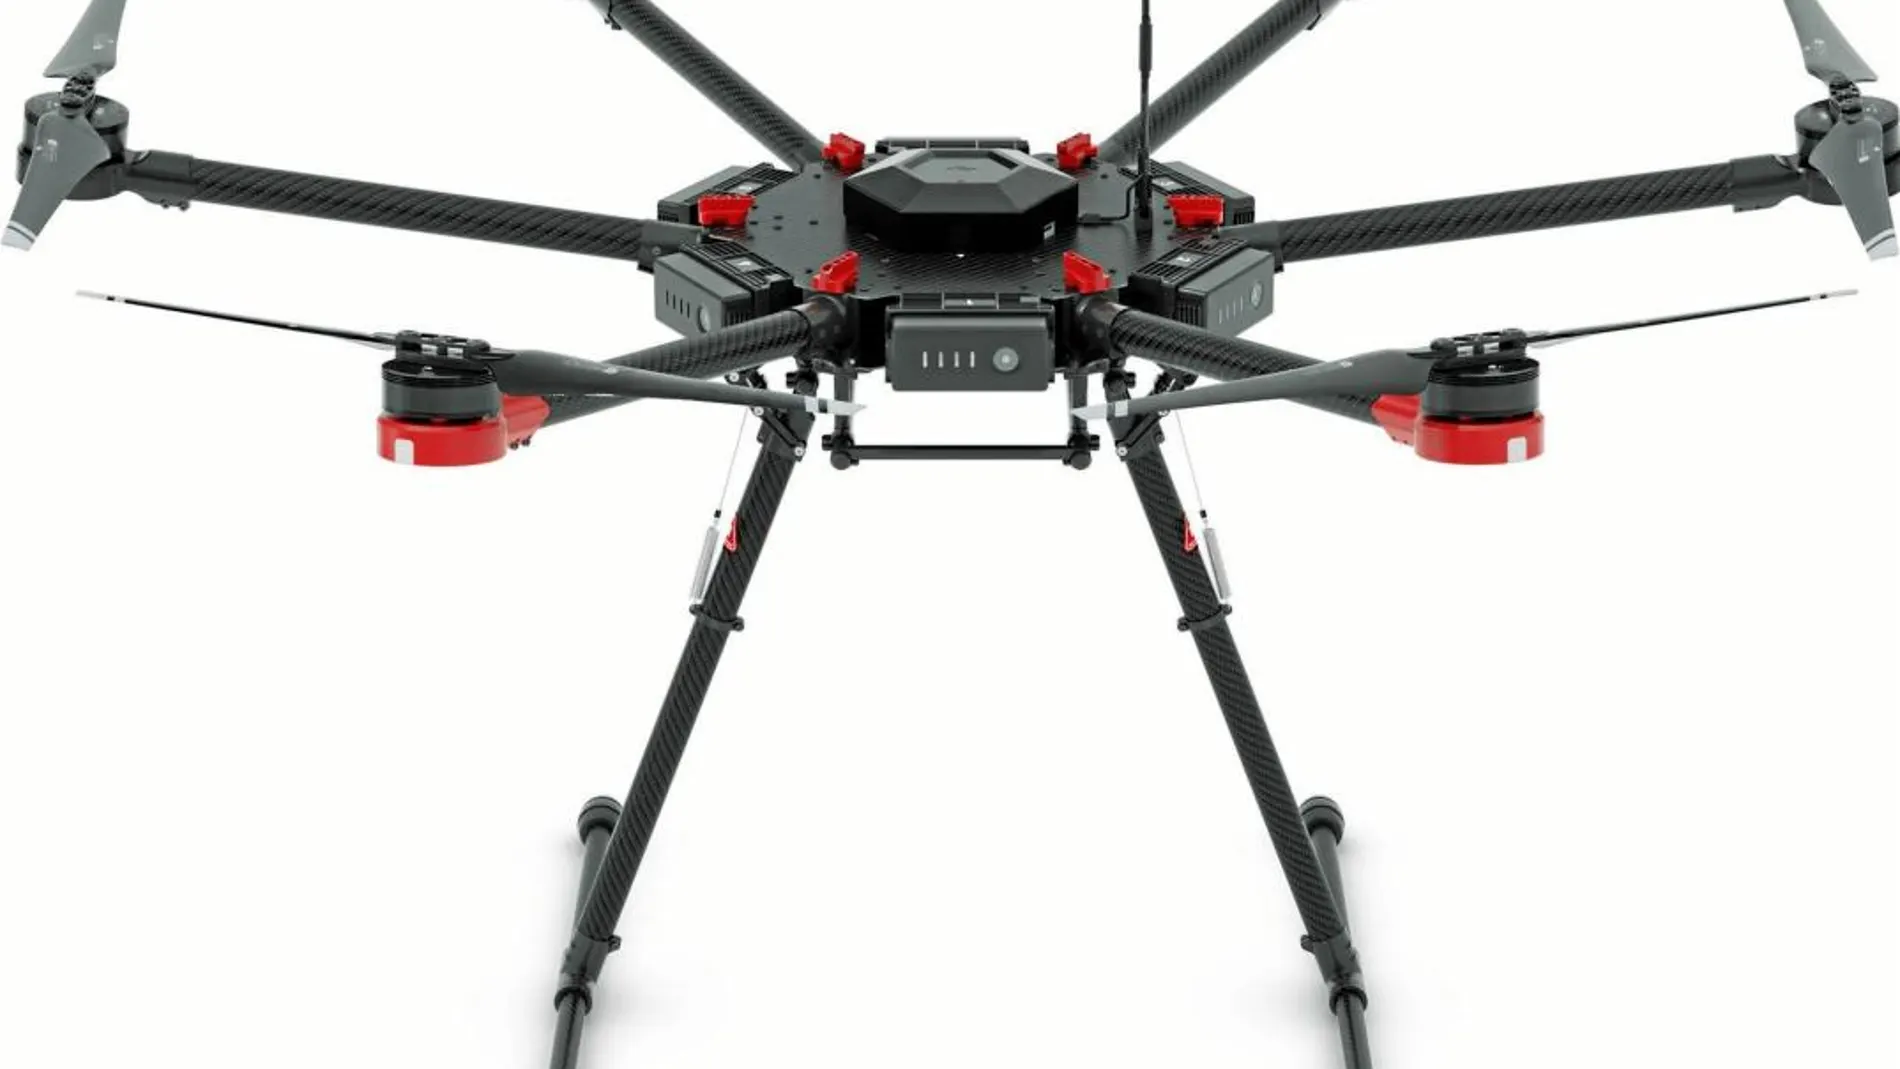 DJI-M600 cuesta unos 3.800 euros en Amazon. Un curso de pilotaje de drones, unos 600. Resulta relativamente barato manejar este potencial arma